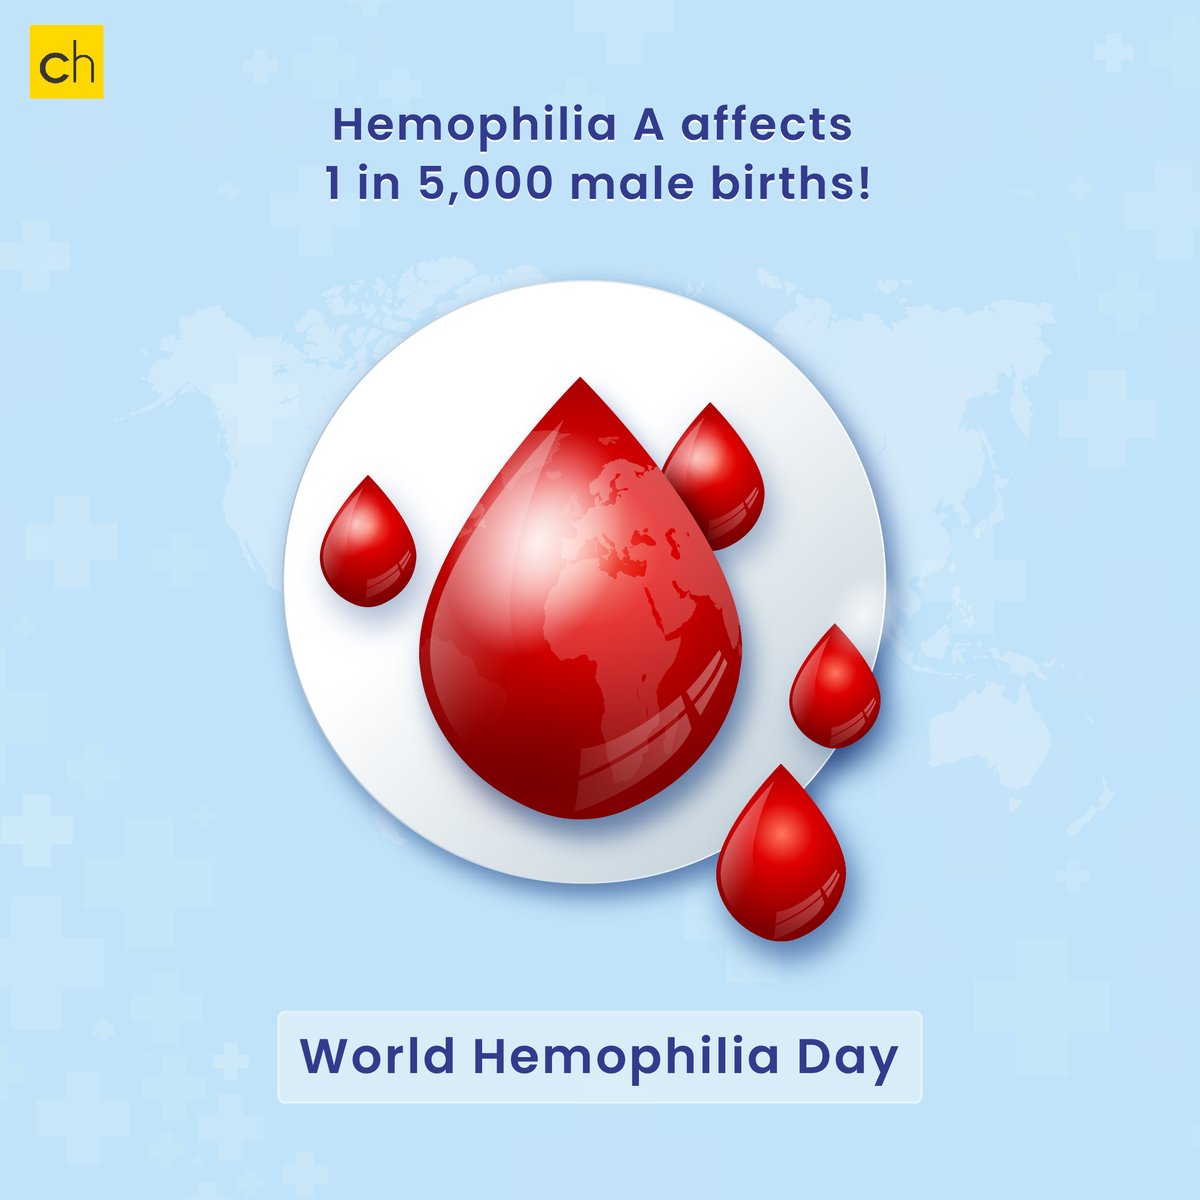 Go, fight, cure! Every Drop Count!

#hemophilia #bleedingdisorders #haemophilia #hemofilia #hemophiliac #hemophilialife #hemophiliaawareness #vwd #vonwillebrands #vonwillebranddisease